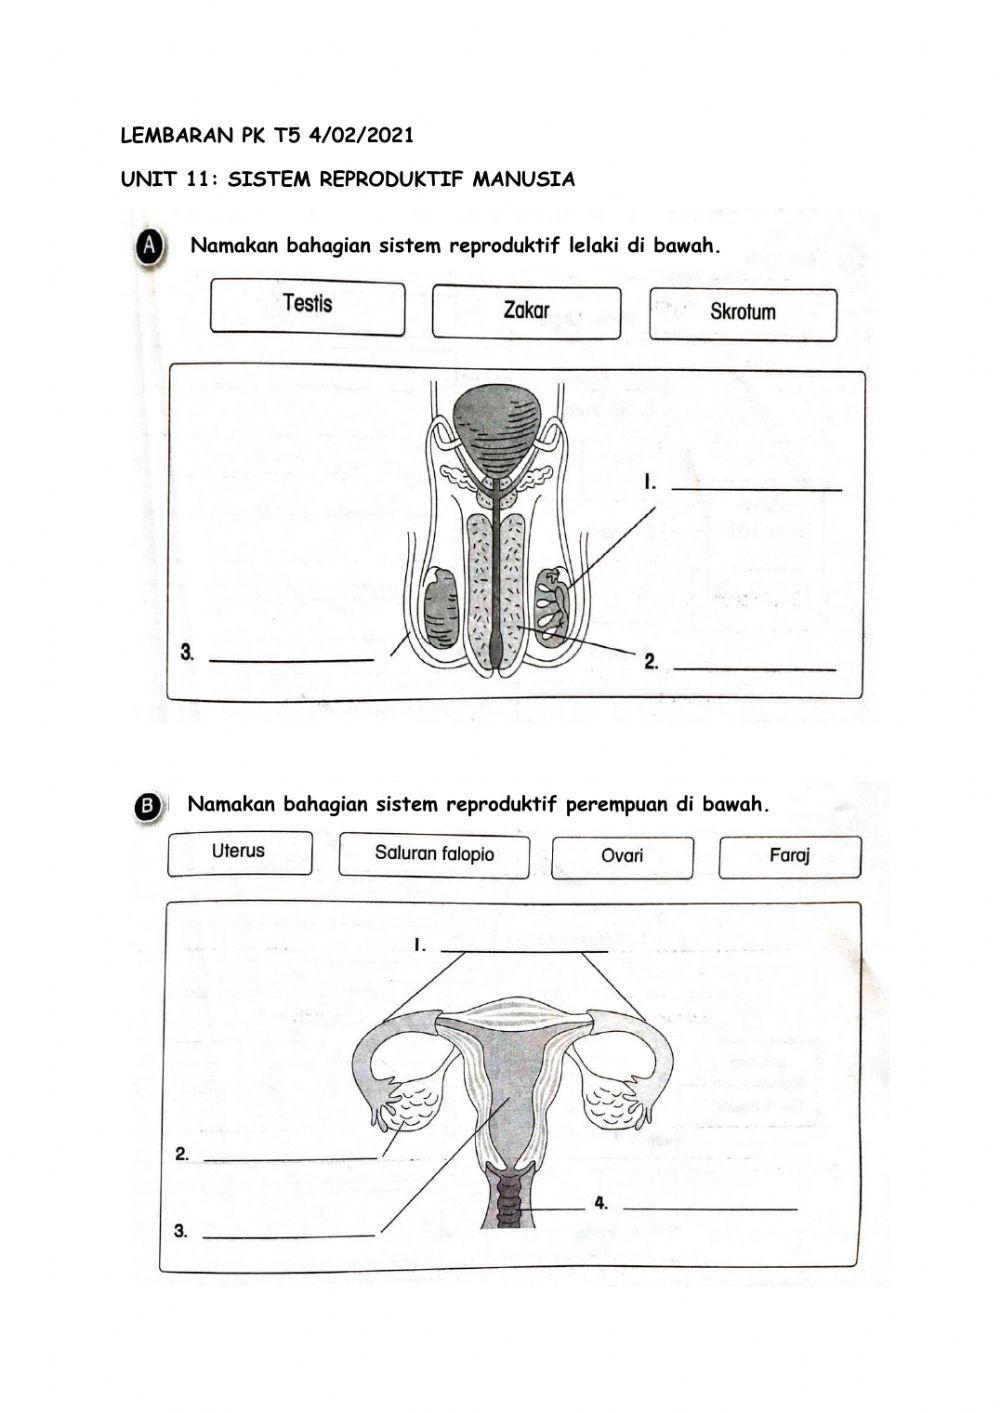 Sistem reproduktif manusia